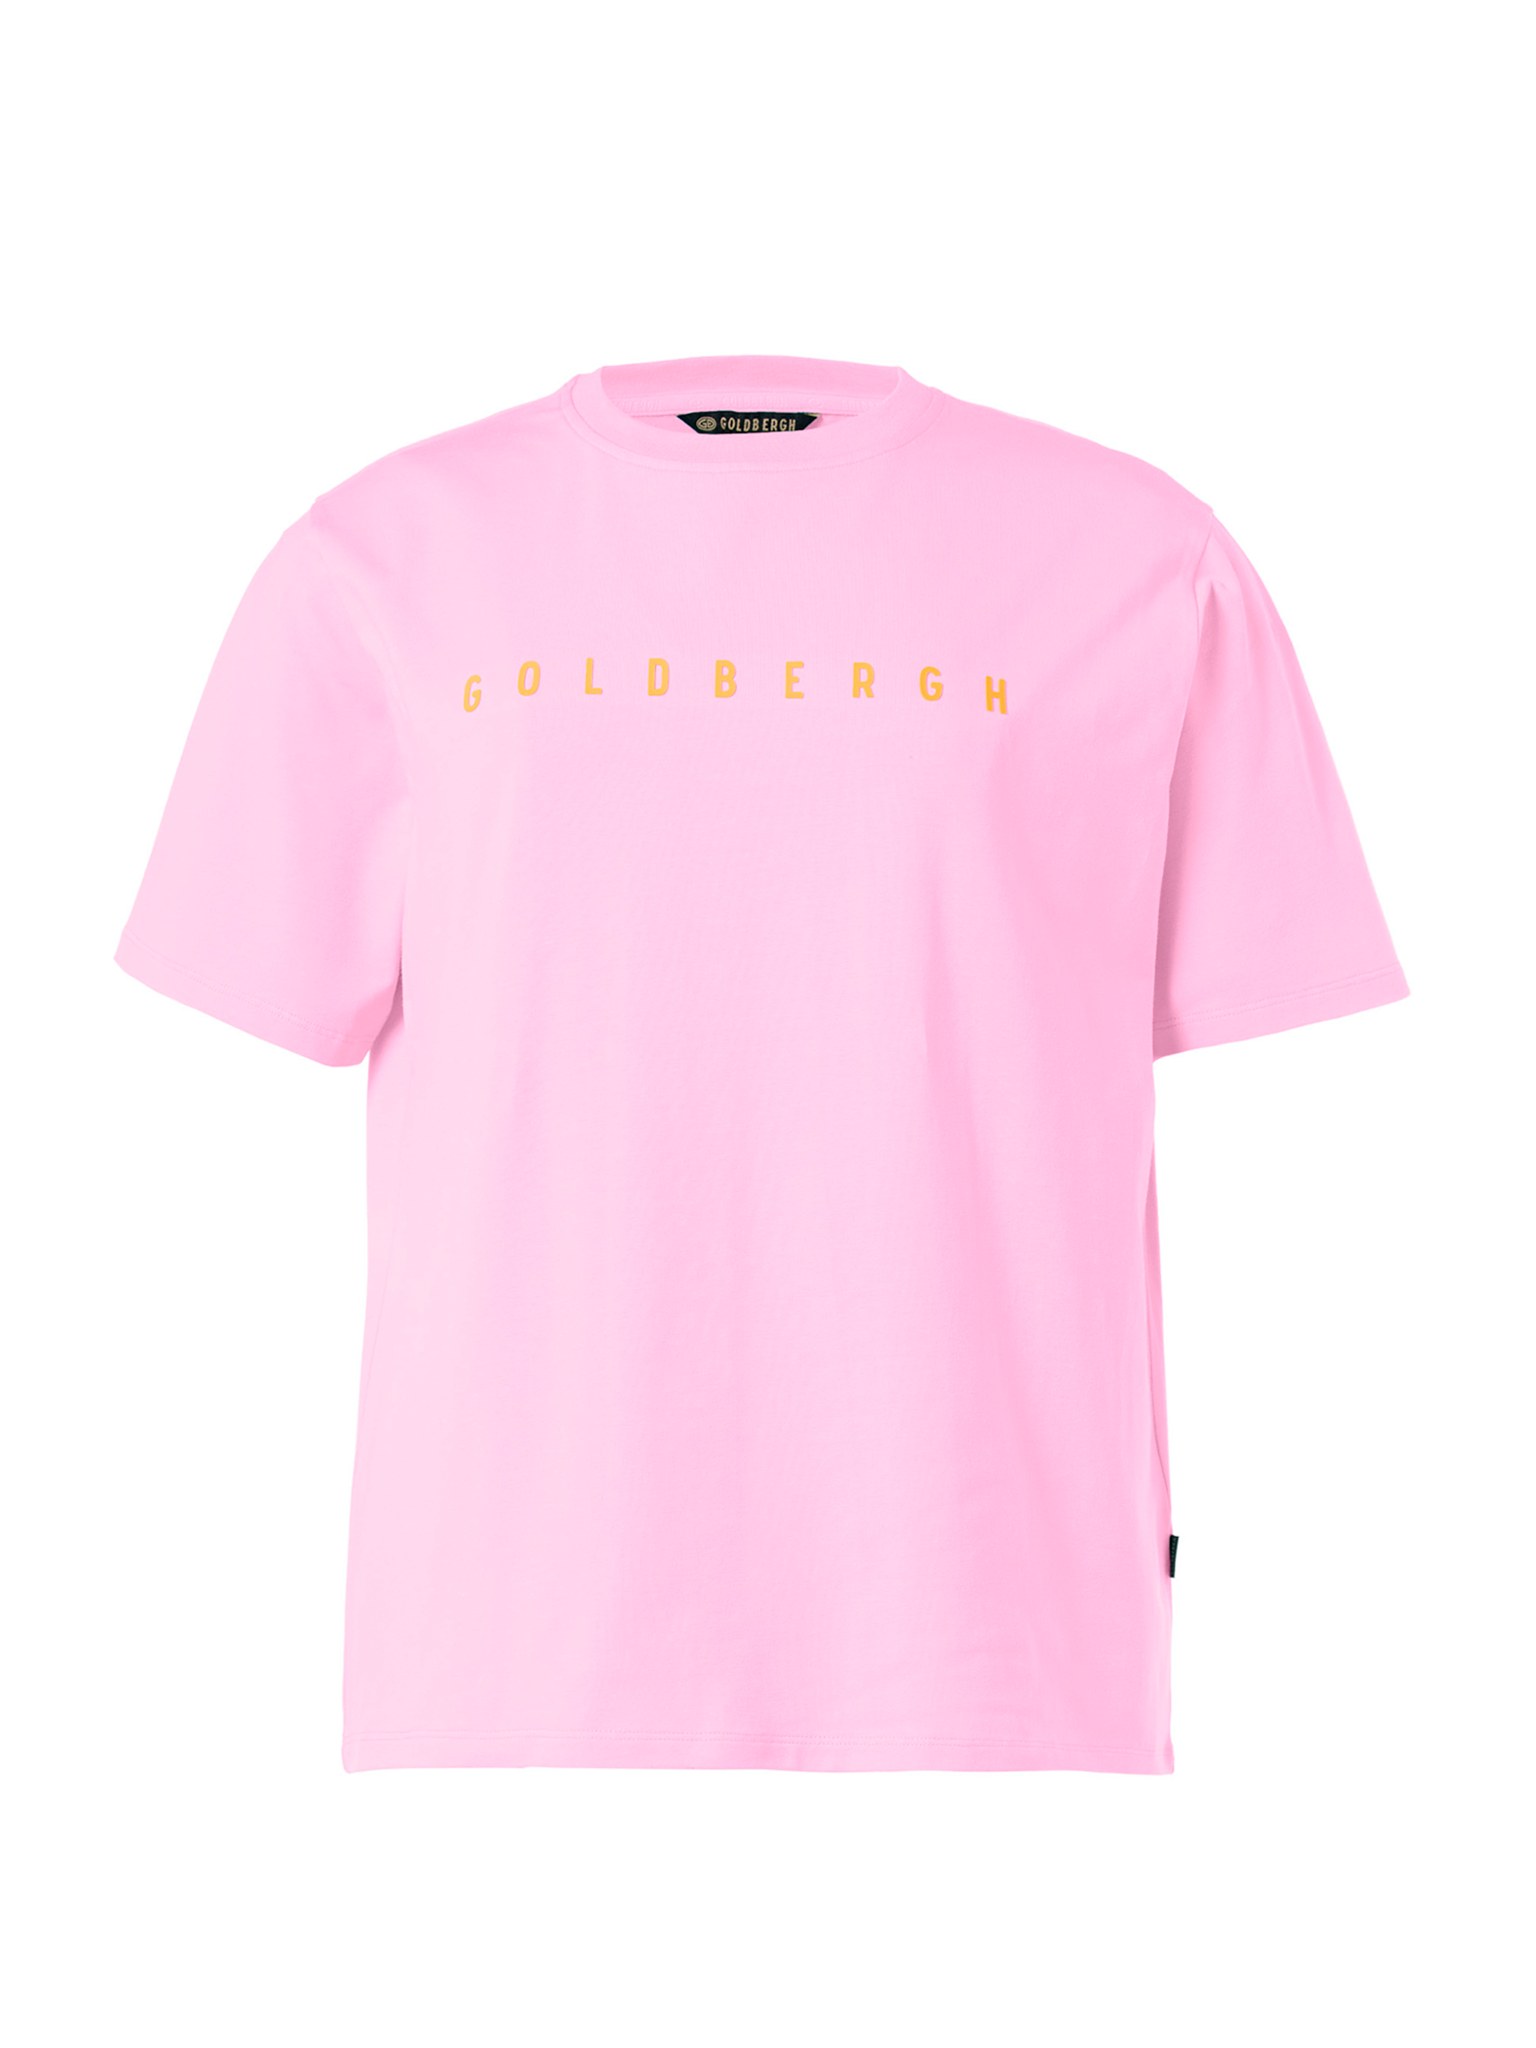 Goldbergh tričko Ruth miami pink Velikost: XS